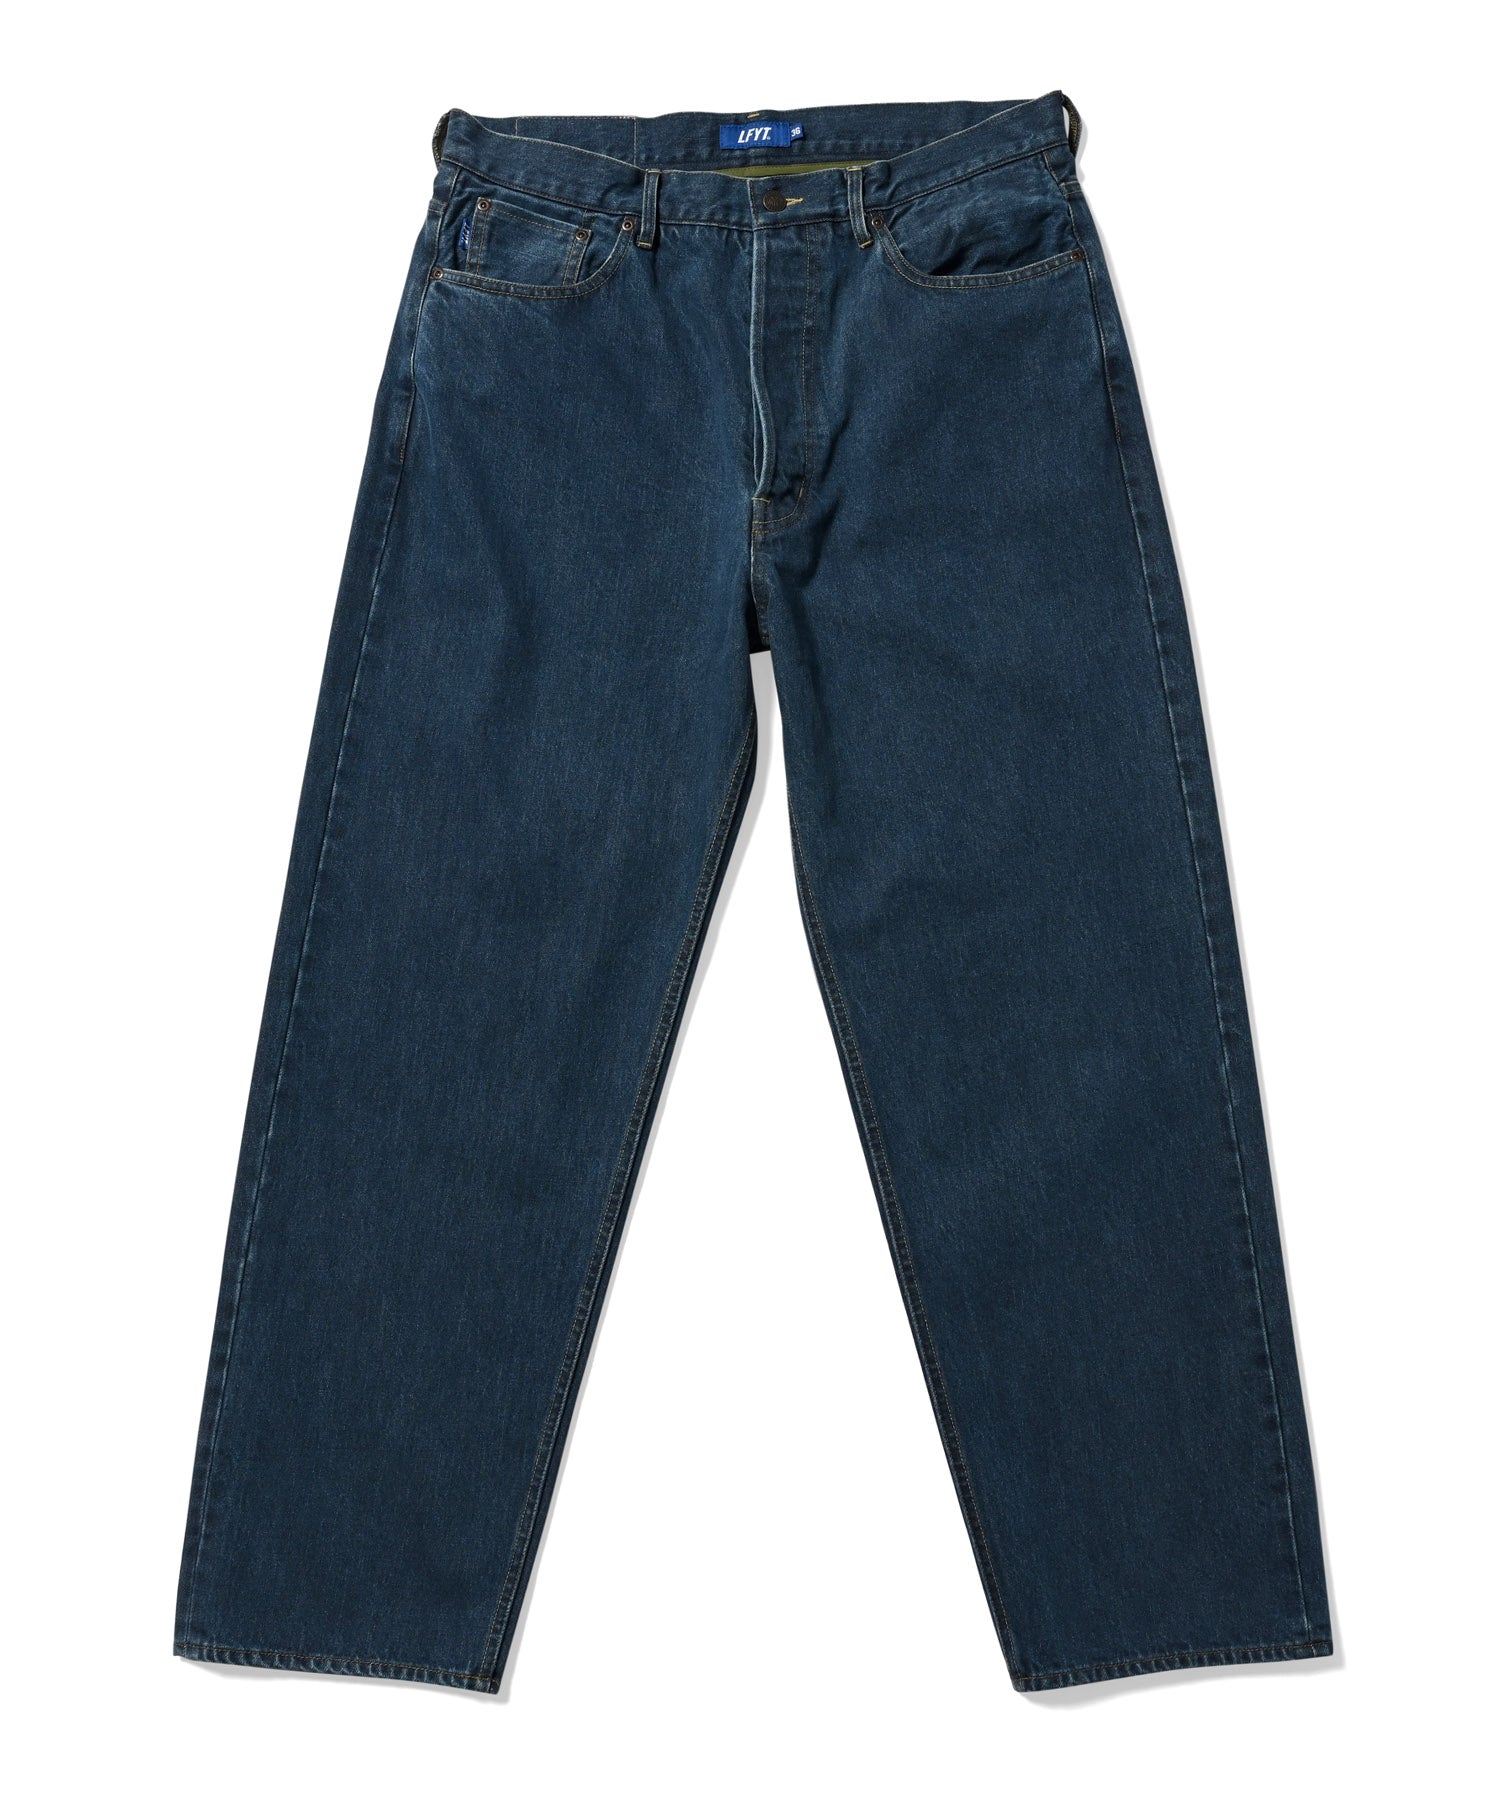 7,605円Japan Indigo Washed Denim Pants Lサイズ